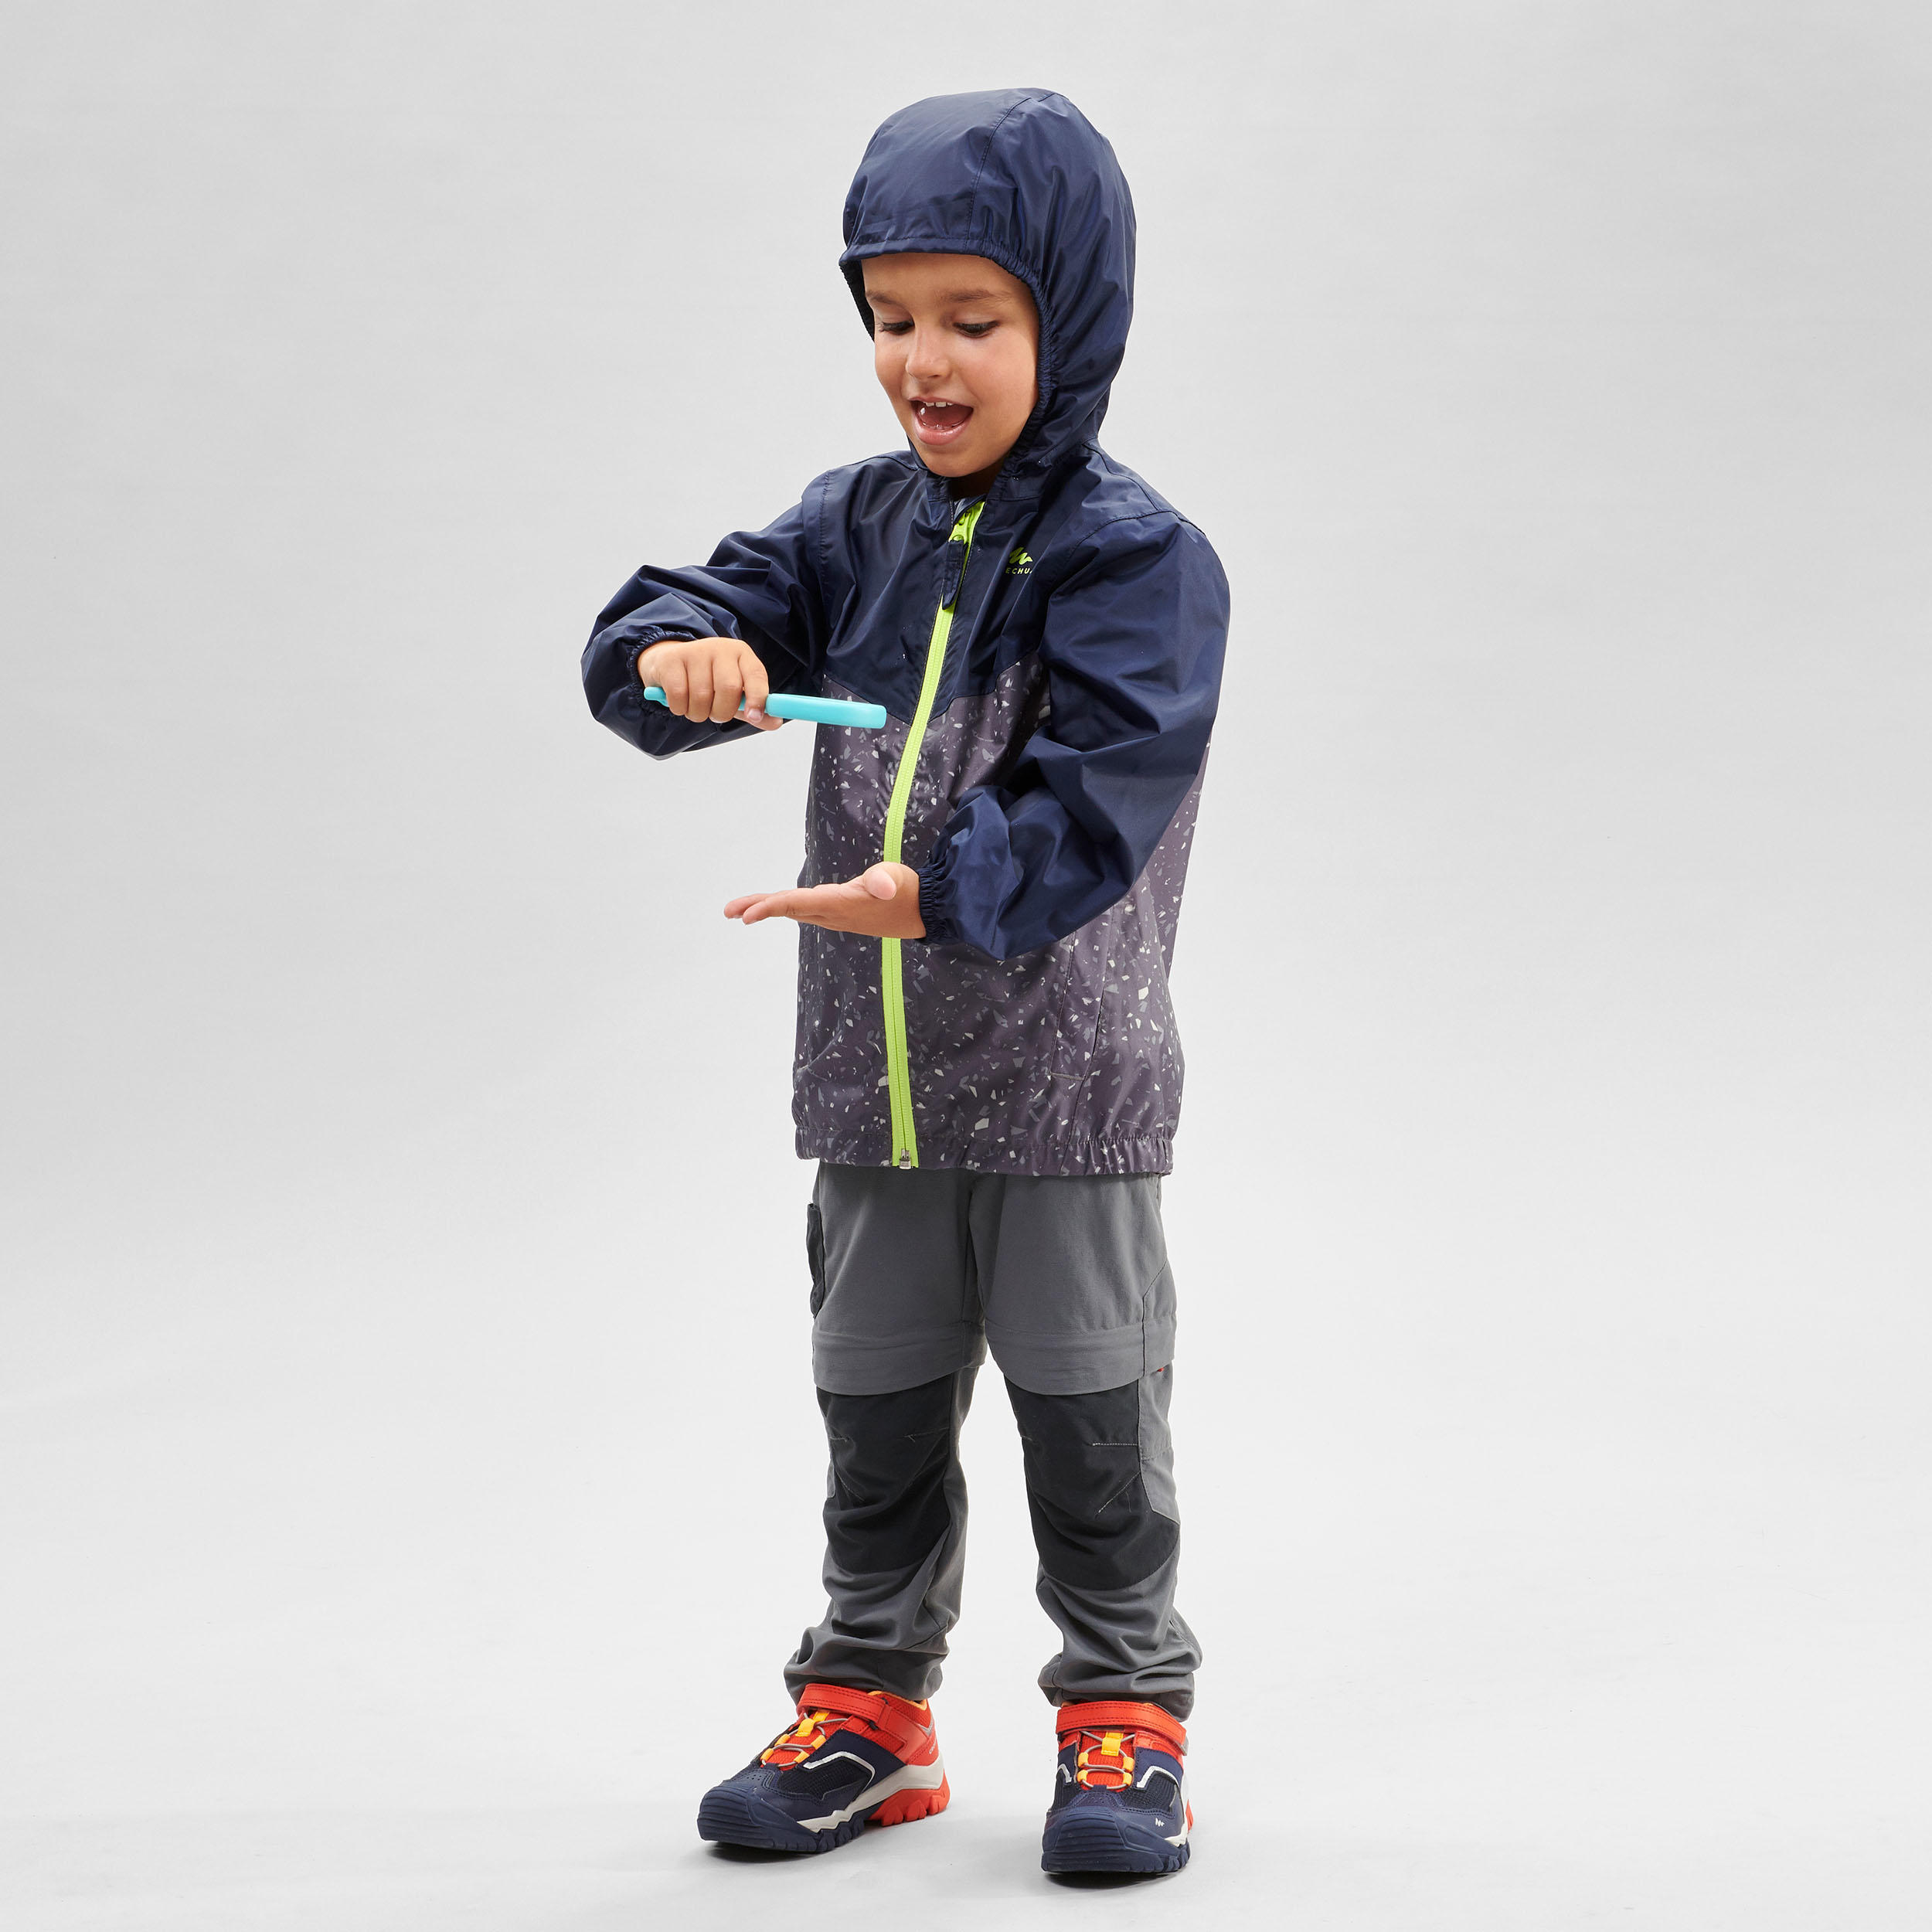 Kids’ Waterproof Hiking Jacket - MH100 Zip - Aged 2-6 2/7